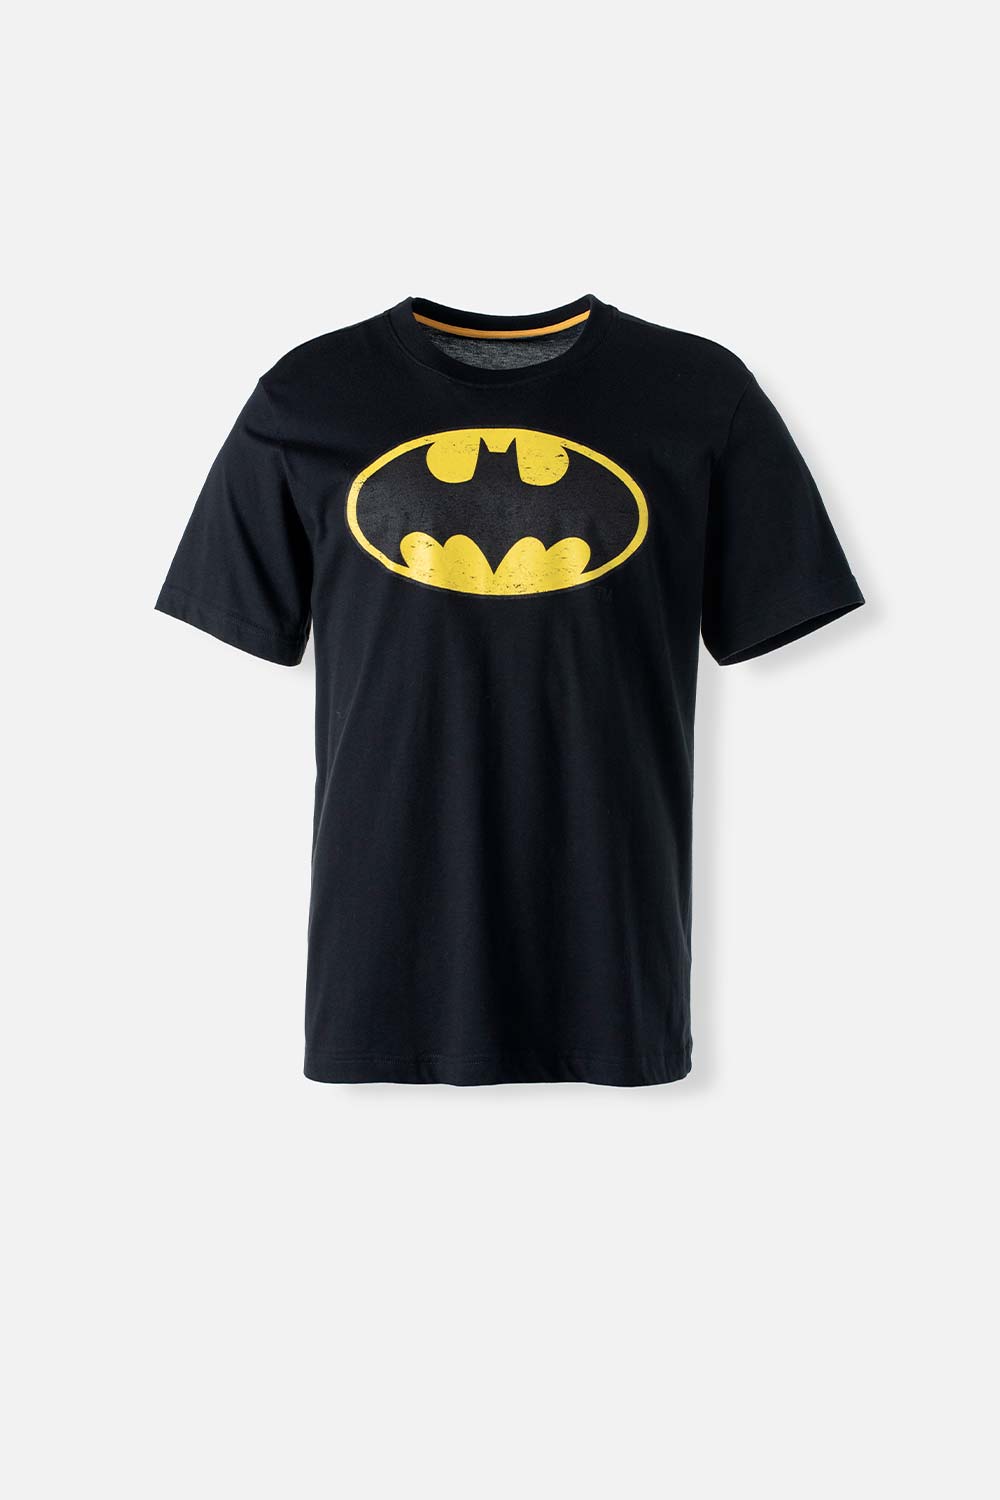 Camiseta de Batman manga corta negra para hombre XS-0